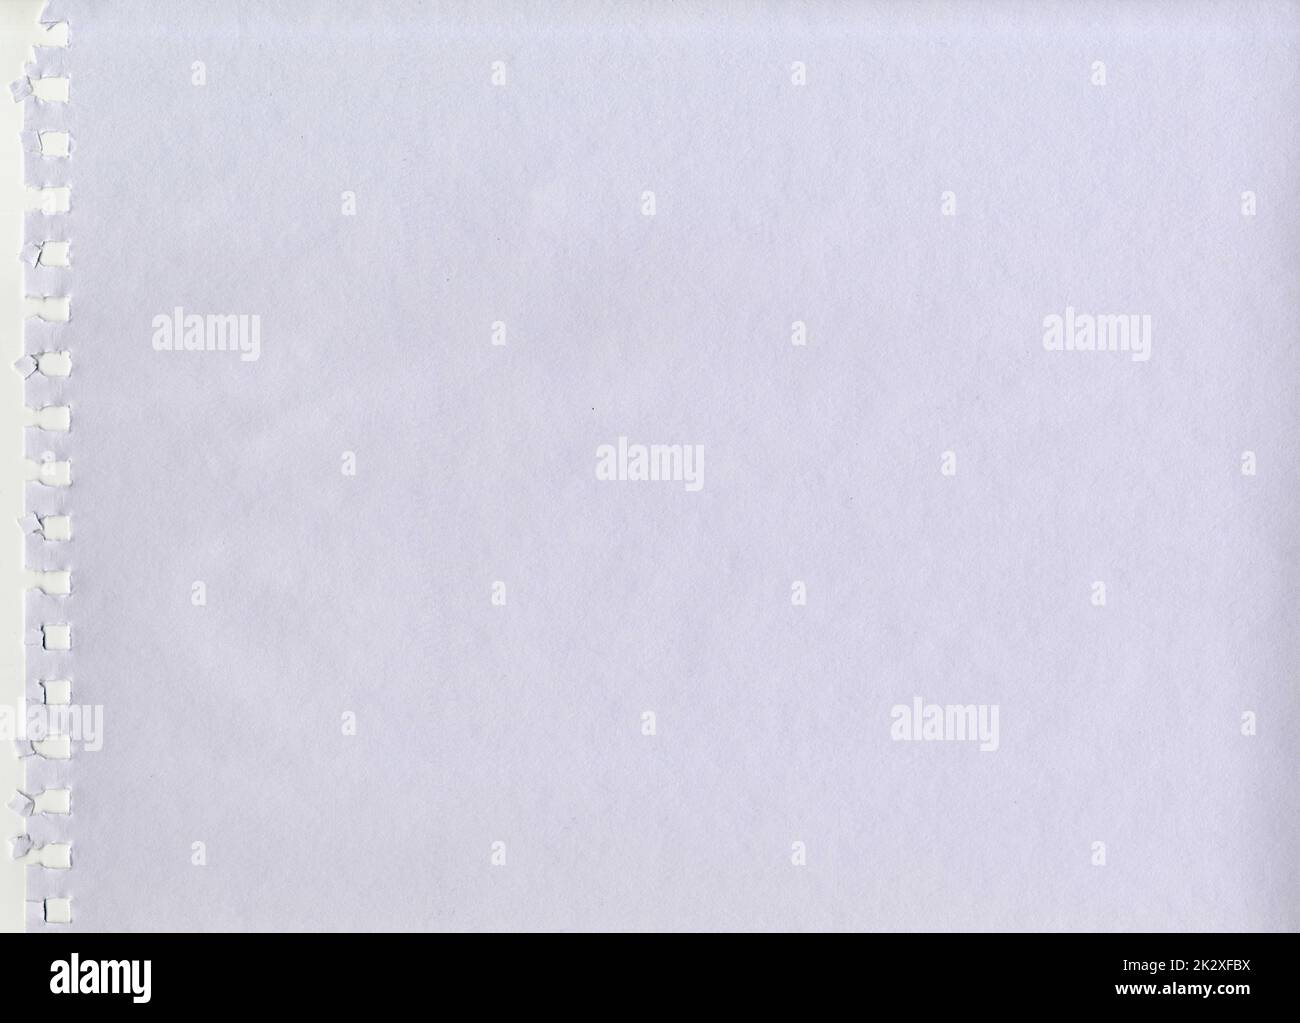 Großes Bild hochauflösende weiße Wasserfarbe ungestrichen raues Papier Textur Hintergrund Scan gerissen von einem Notebook mit quadratischen Spirallöchern für Gegenwart Stockfoto